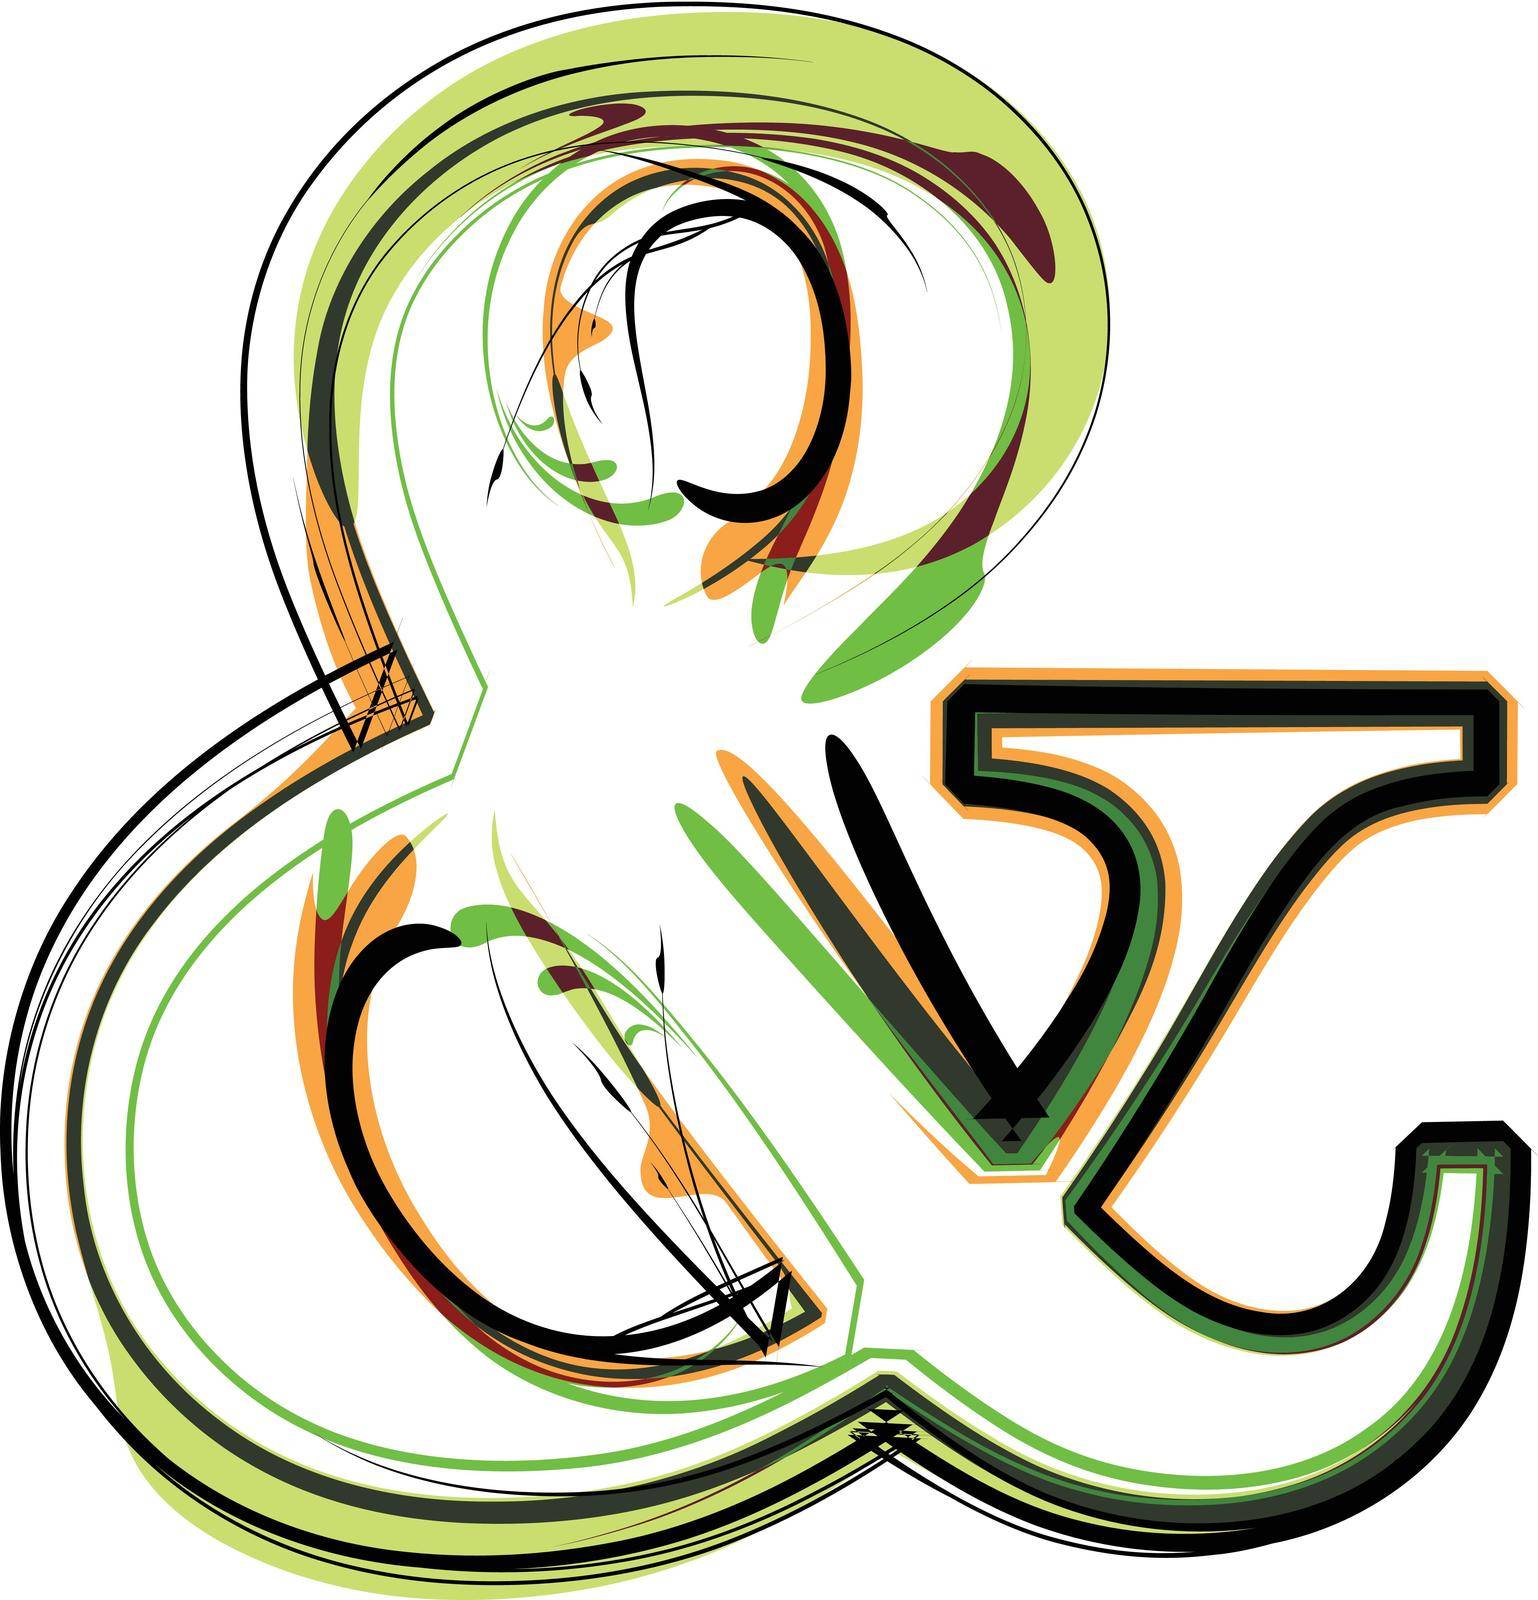 Organic type symbol by aroas